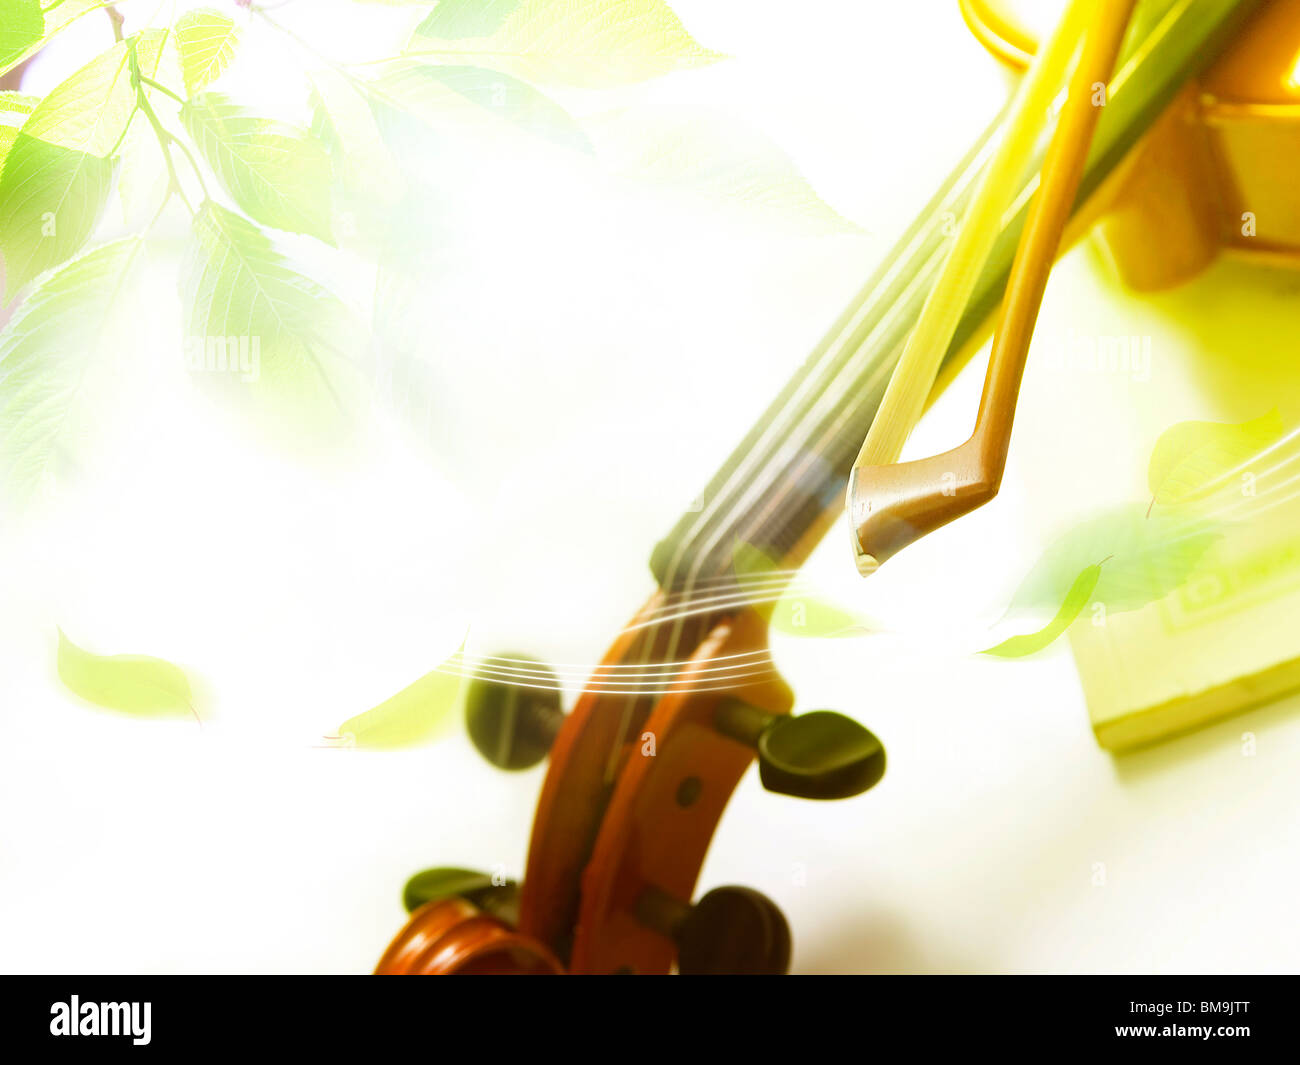 Imagen de hojas y violín, gráficos por ordenador Foto de stock